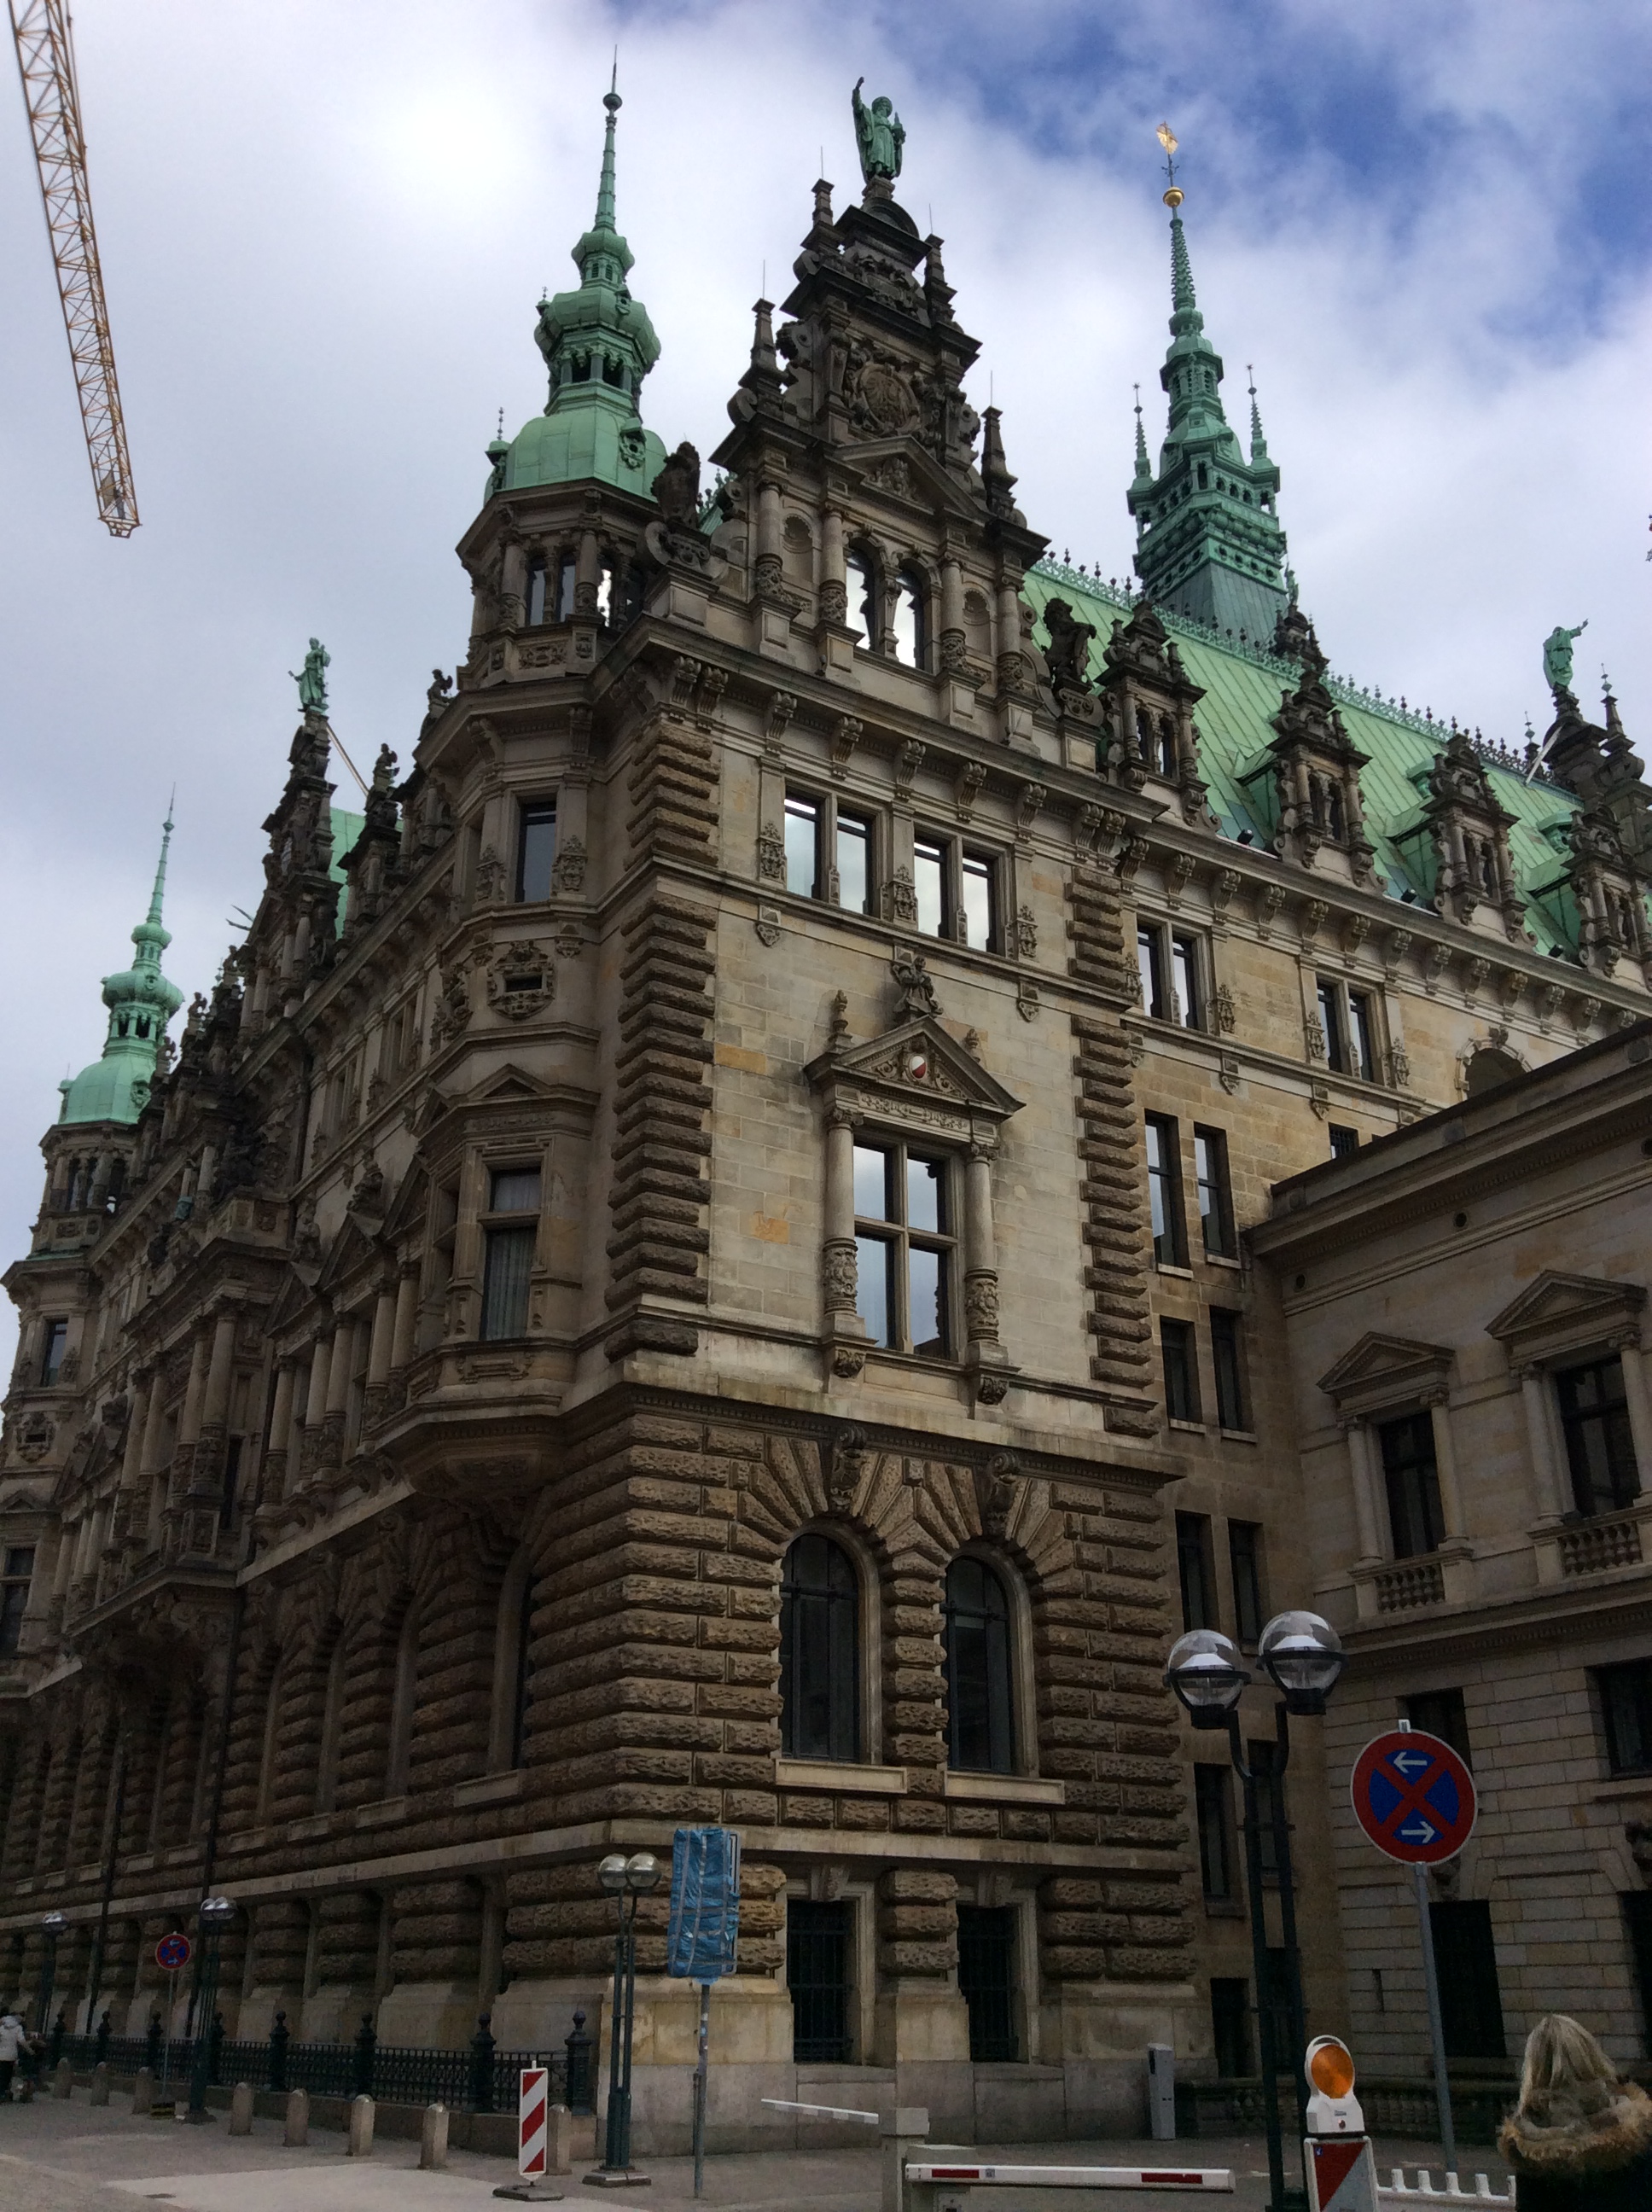 汉堡市政厅位于德国汉堡市风光秀丽的内阿尔斯特湖边,它背靠证券交易